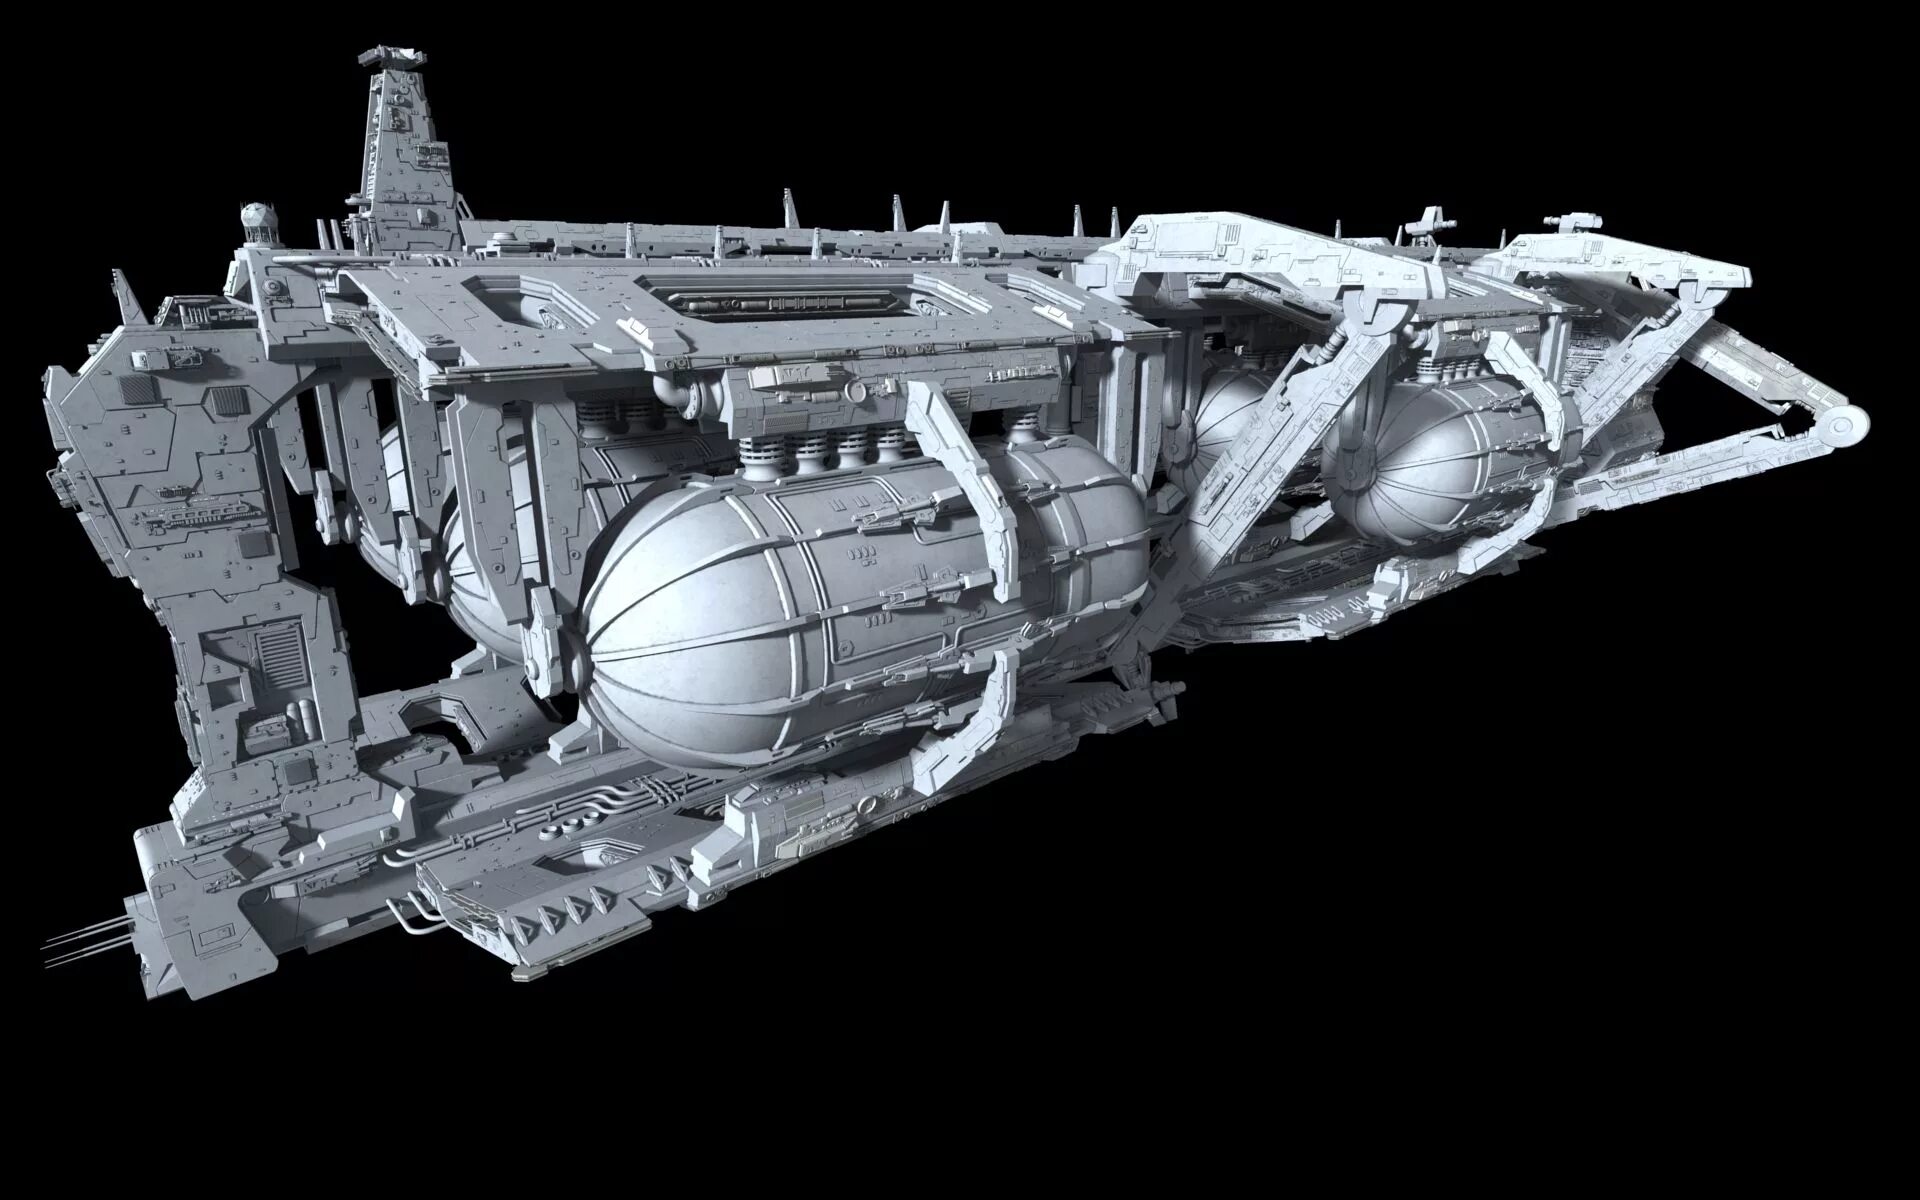 Космический корабль Звездные войны. Космический корабль челнок вархаммер. Грузовой корабль Star Wars YV 865. Модель космического корабля.